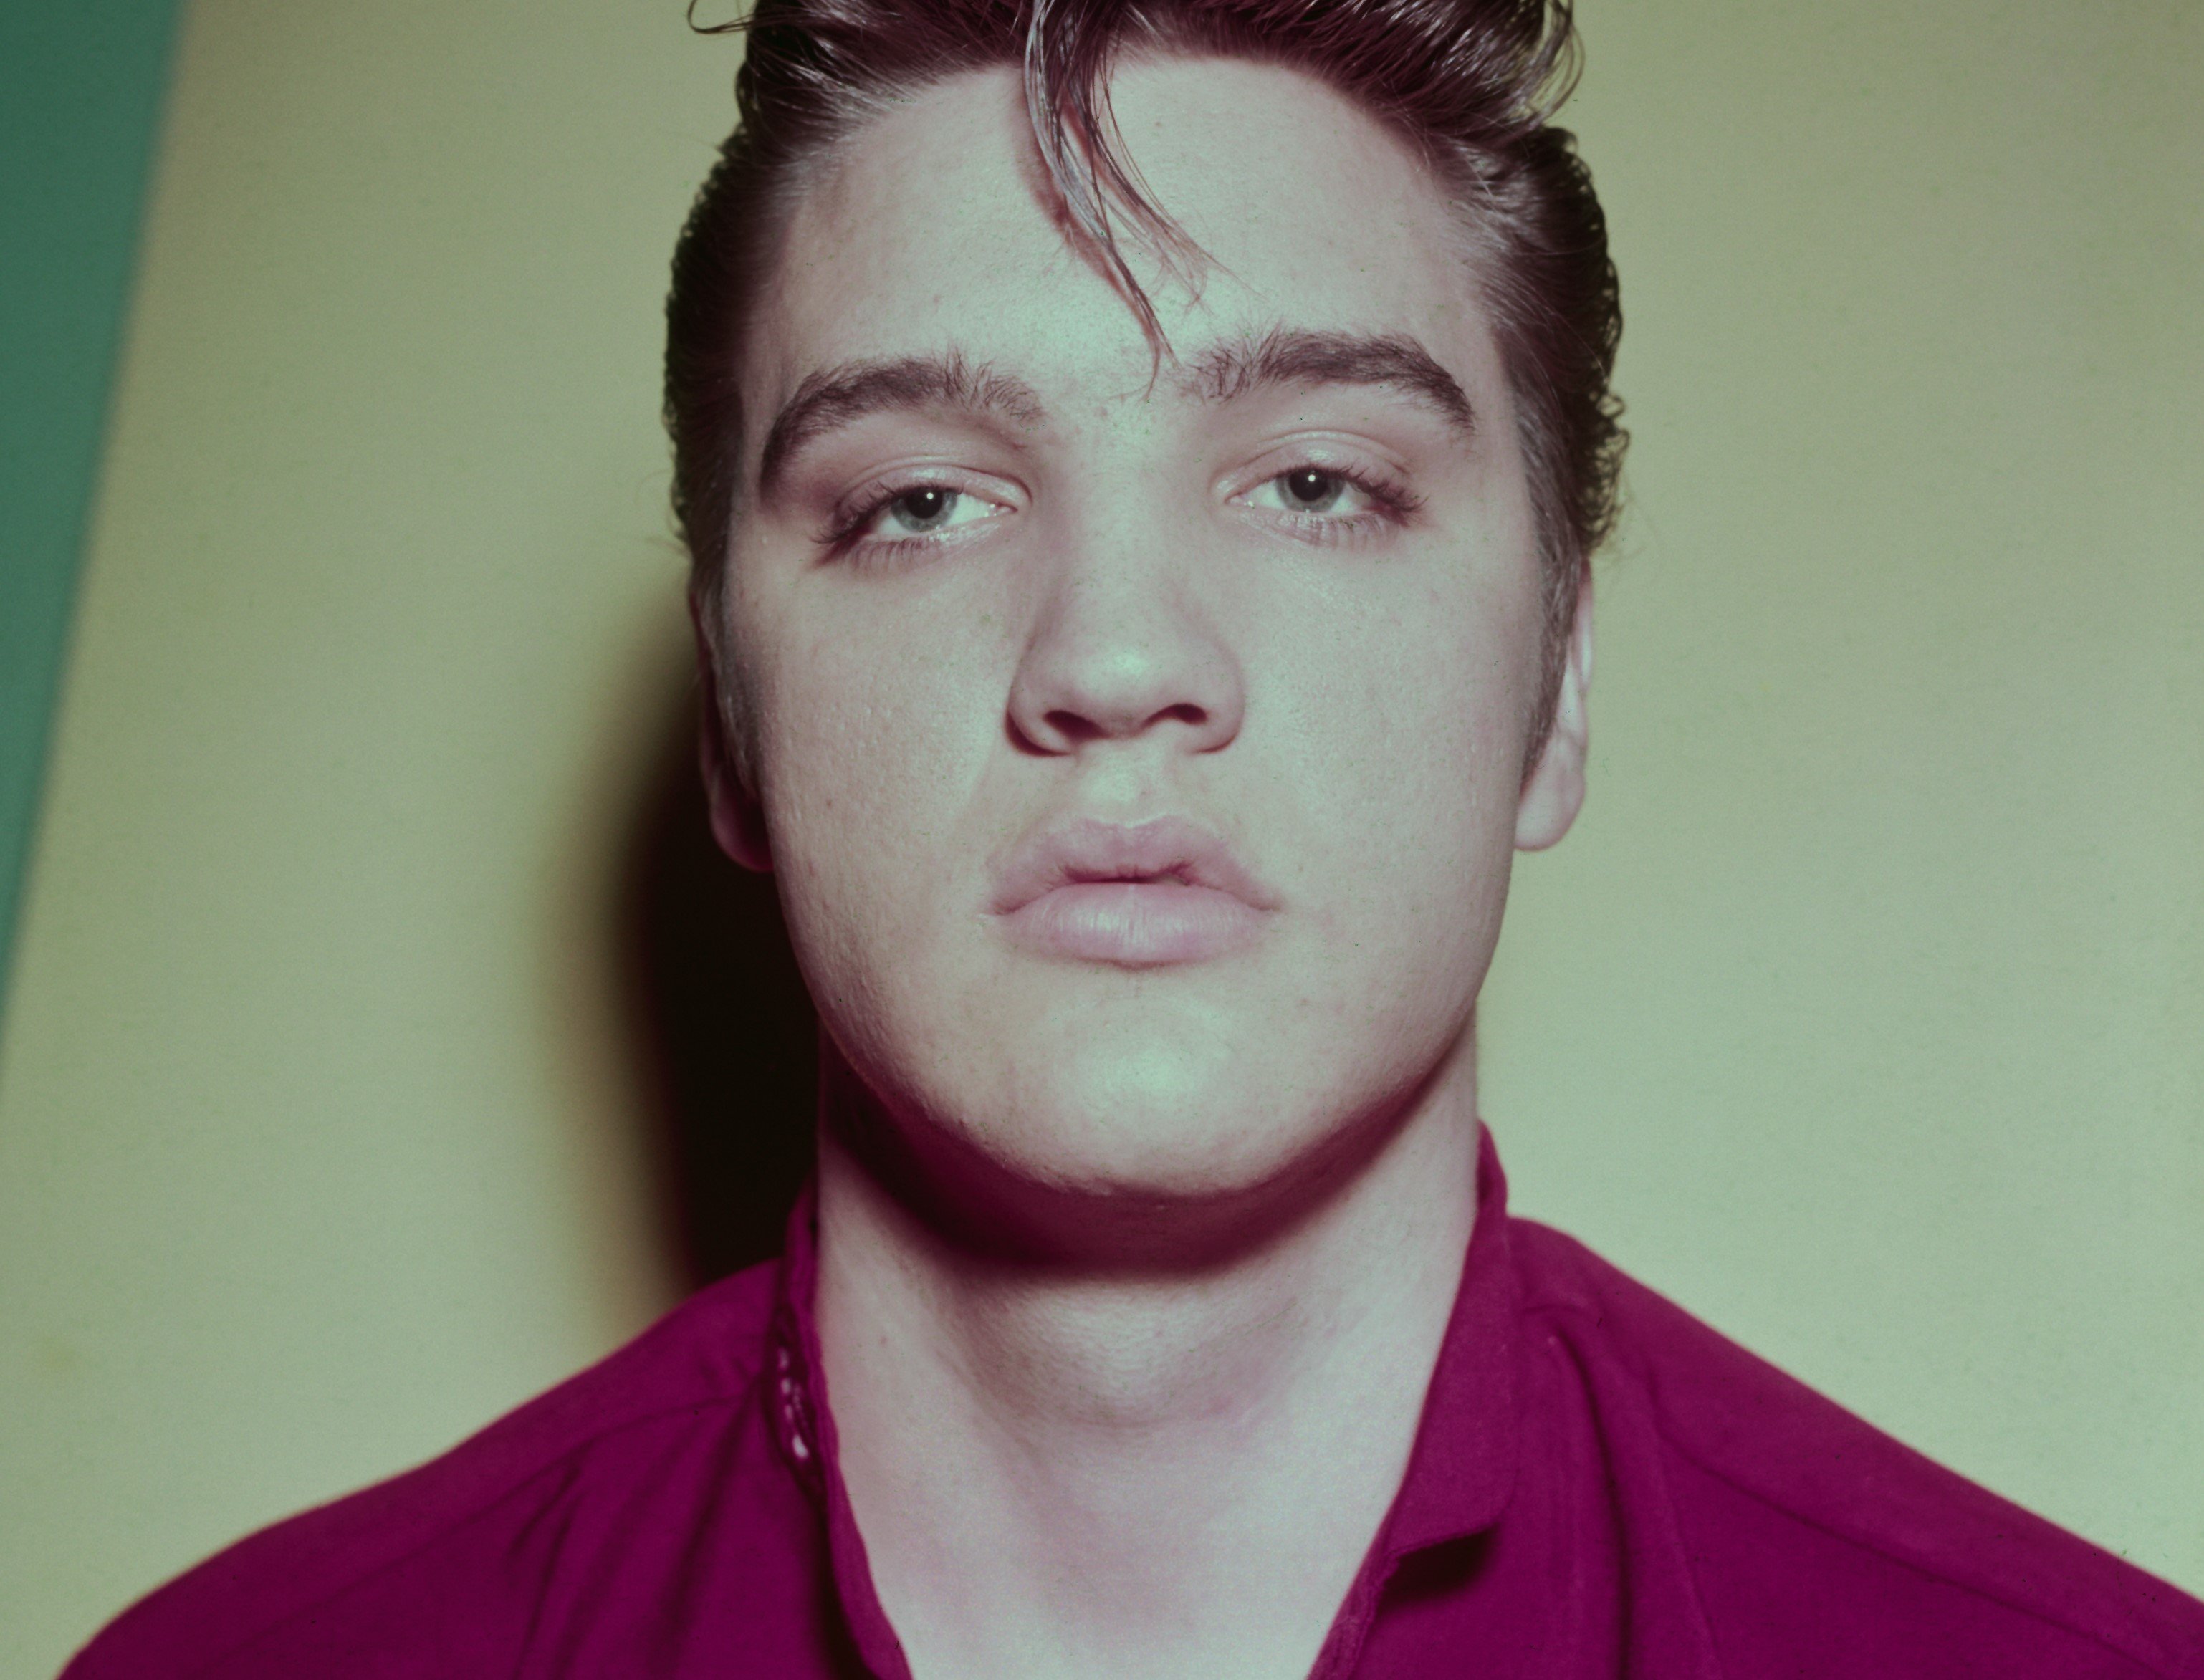 Elvis Presley wearing purple